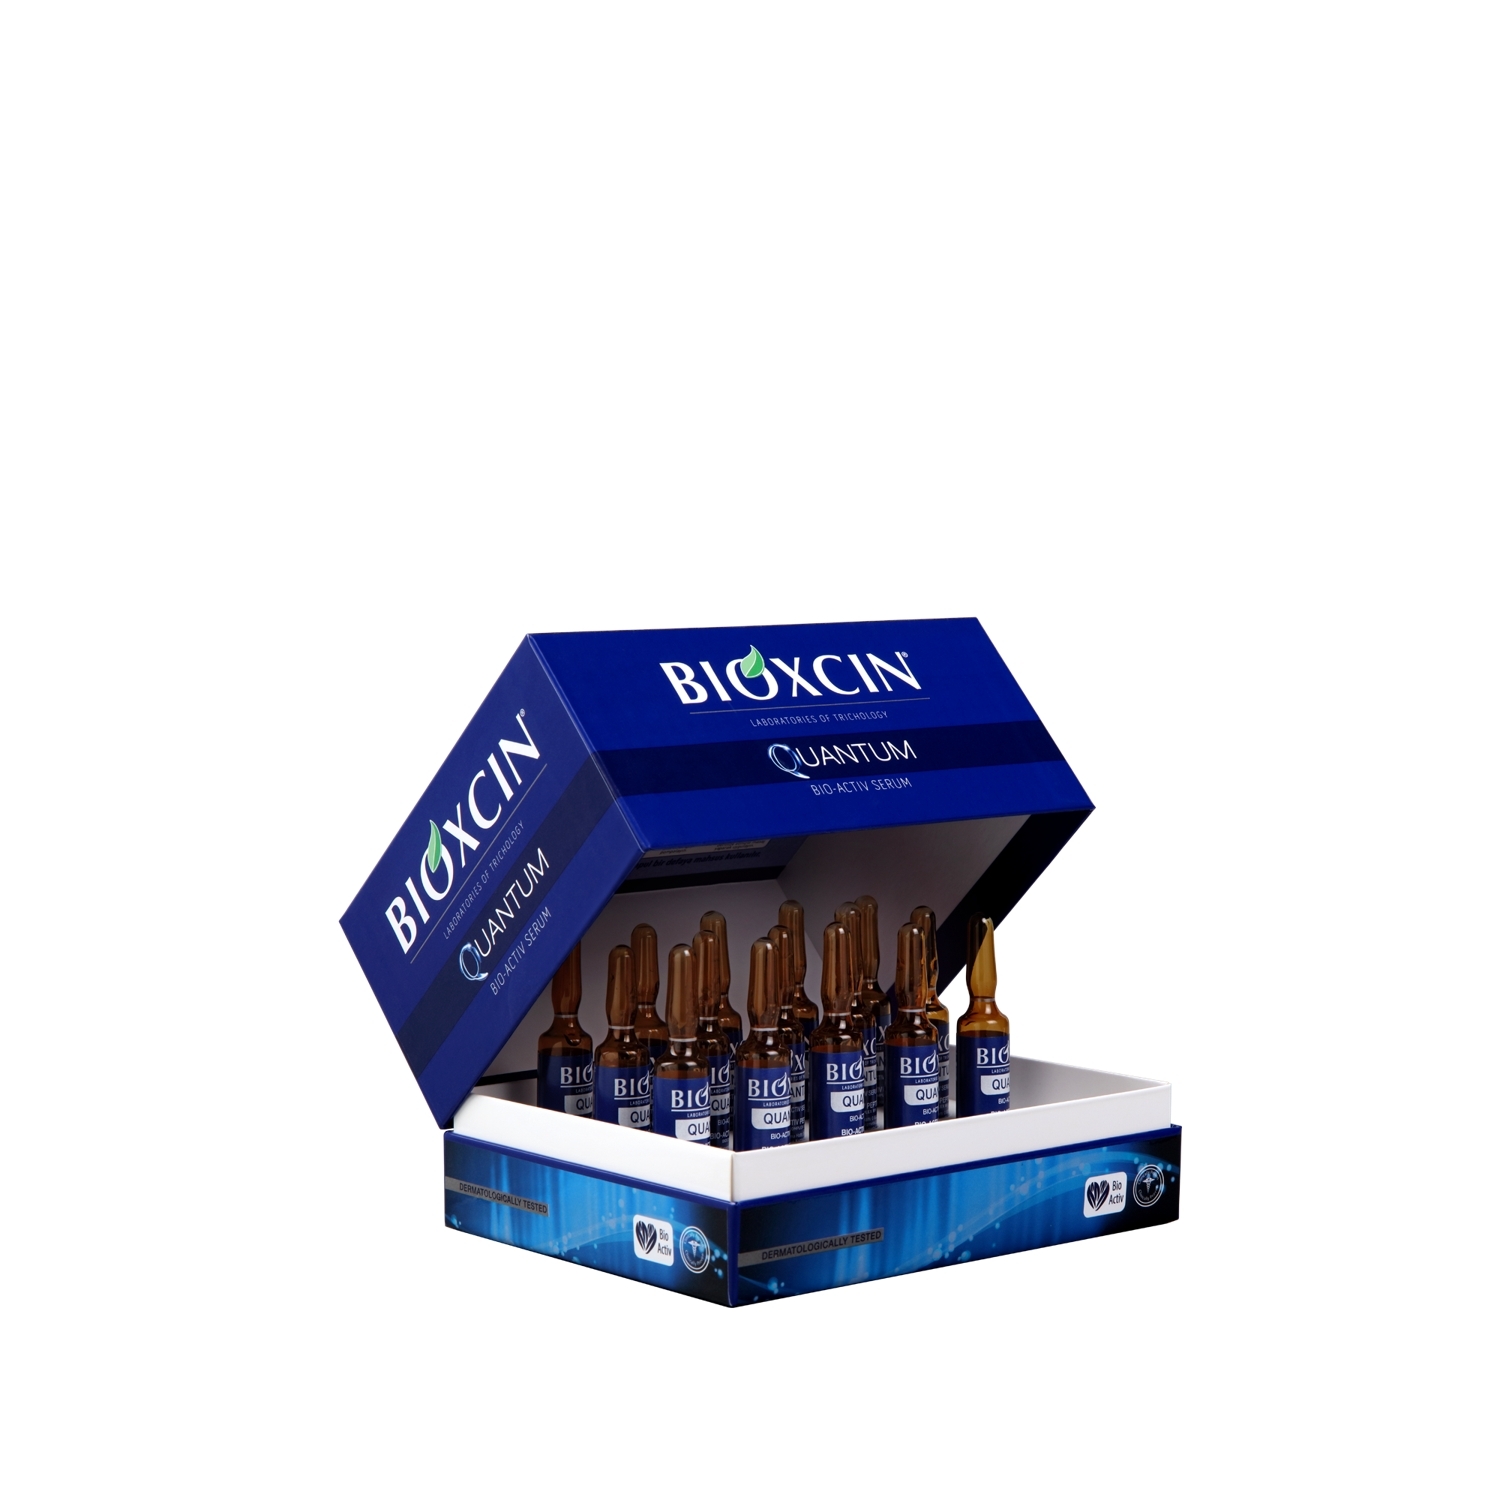 Bioxcin Quantum Bio-Activ Serum 15x6ml